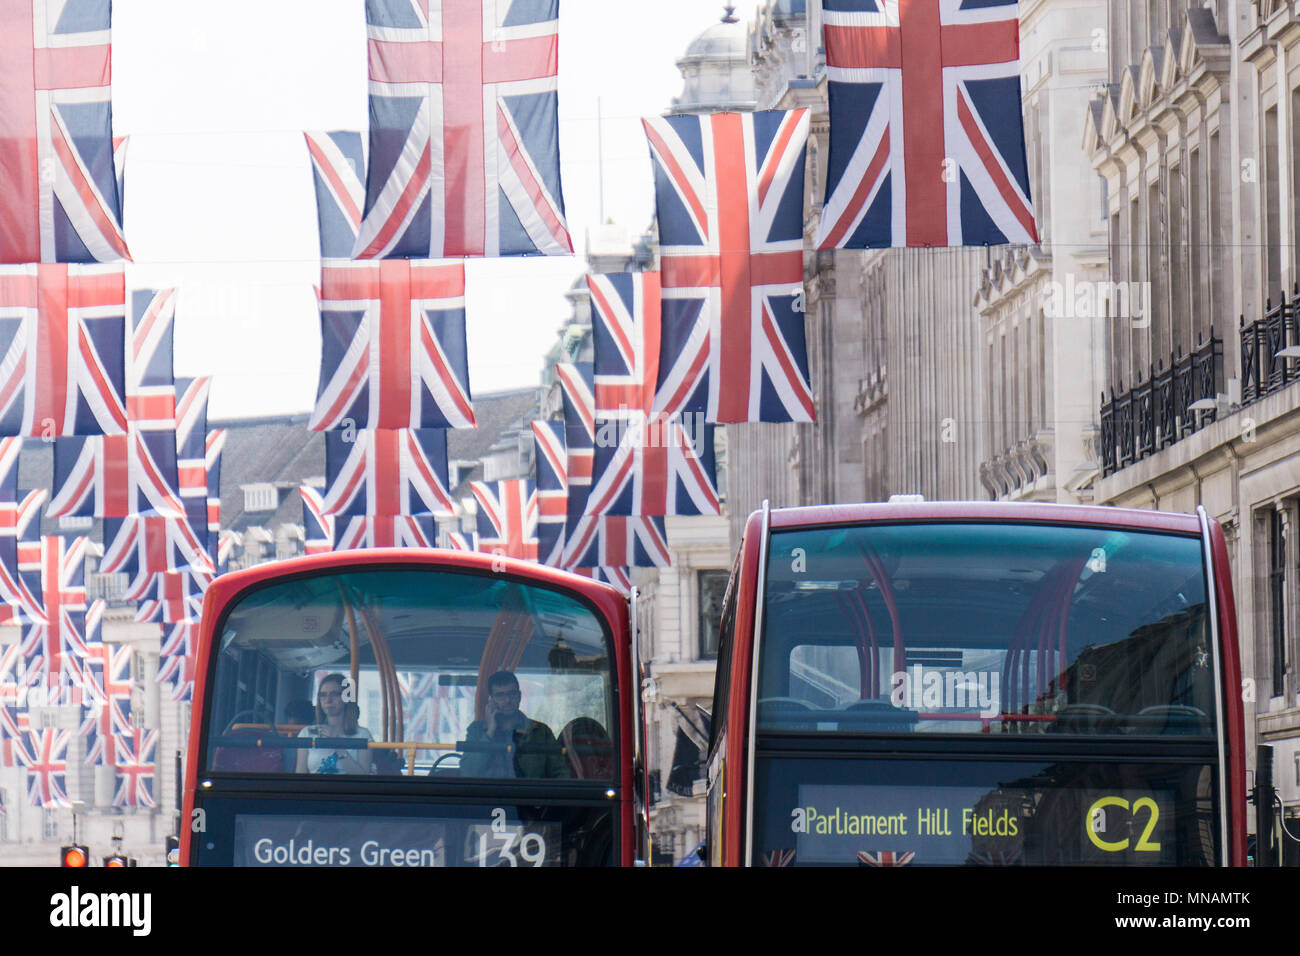 Union Jack drapeaux pendent dans Regent Street, le centre de Londres, dans la préparation de la mariage du prince Harry et Meghan Markle Goutte d'encre : Crédit/Alamy Live News Banque D'Images